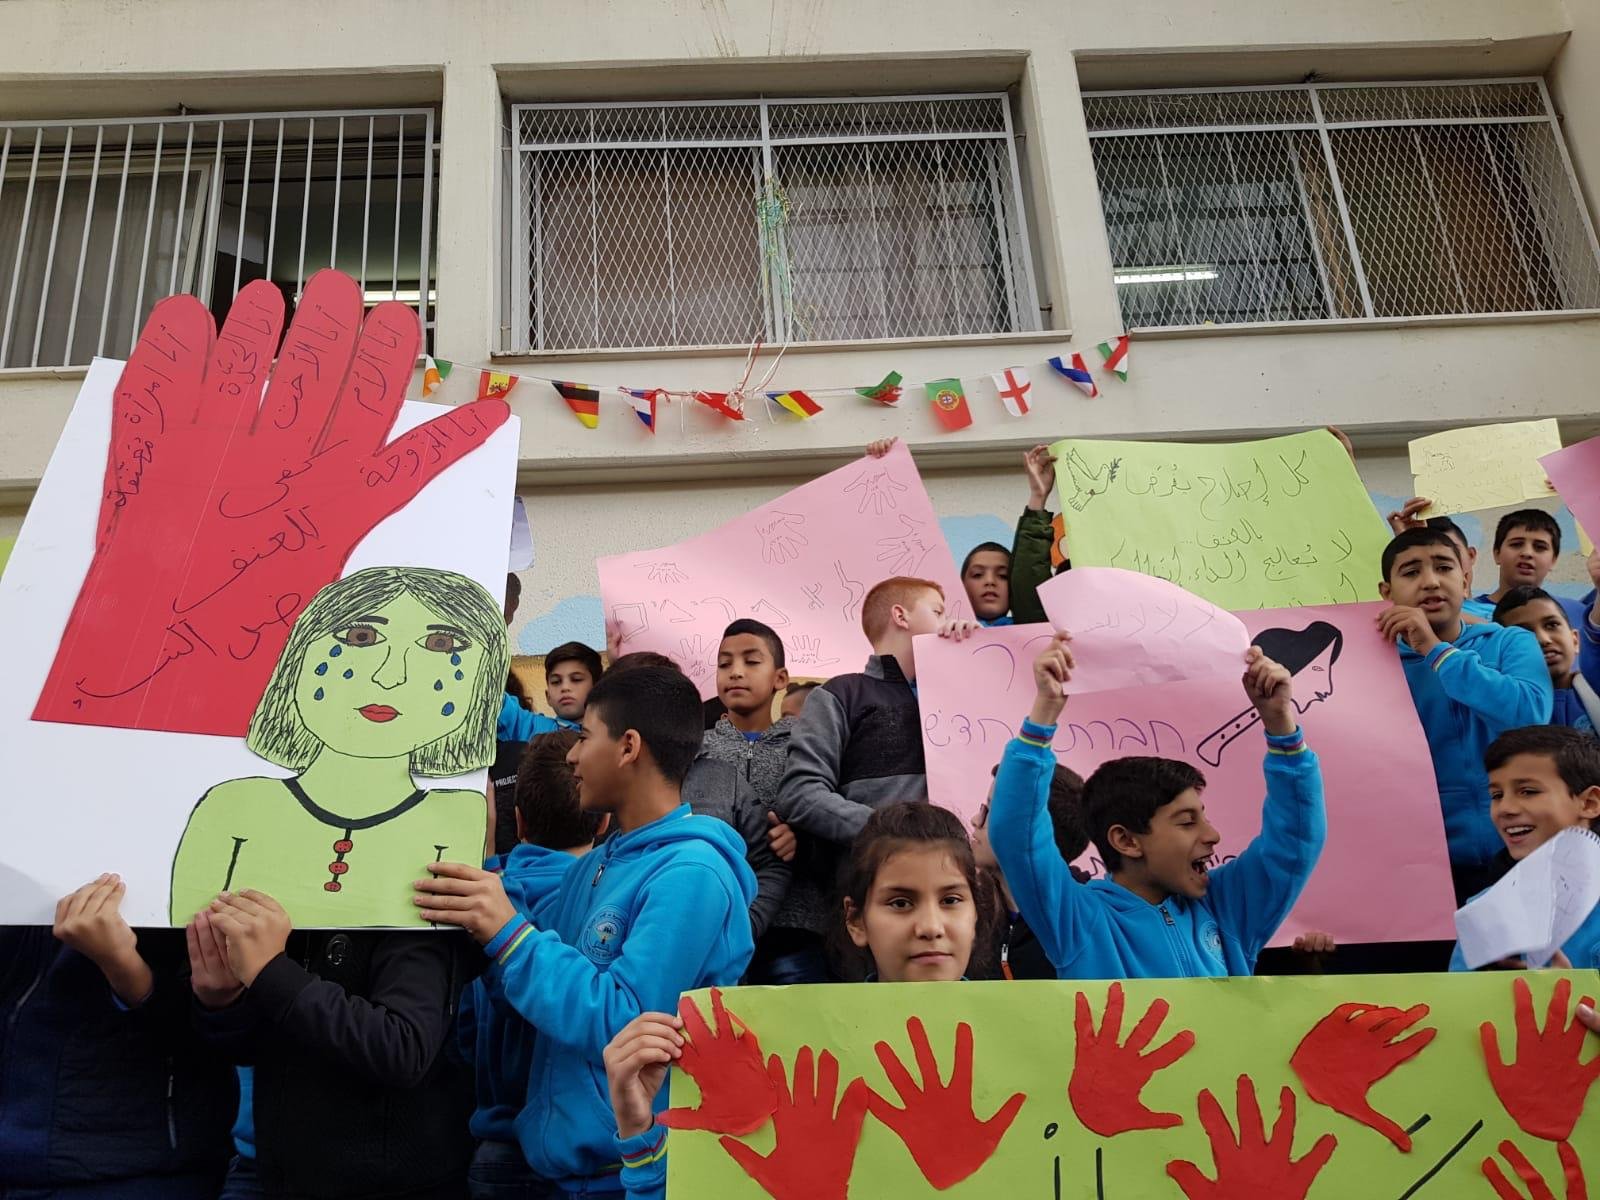 وقفةٌ احتجاجية تضامنًا مع الاضراب ضد العنف في المدرسة الجماهيرية بير الامير الناصرة-6